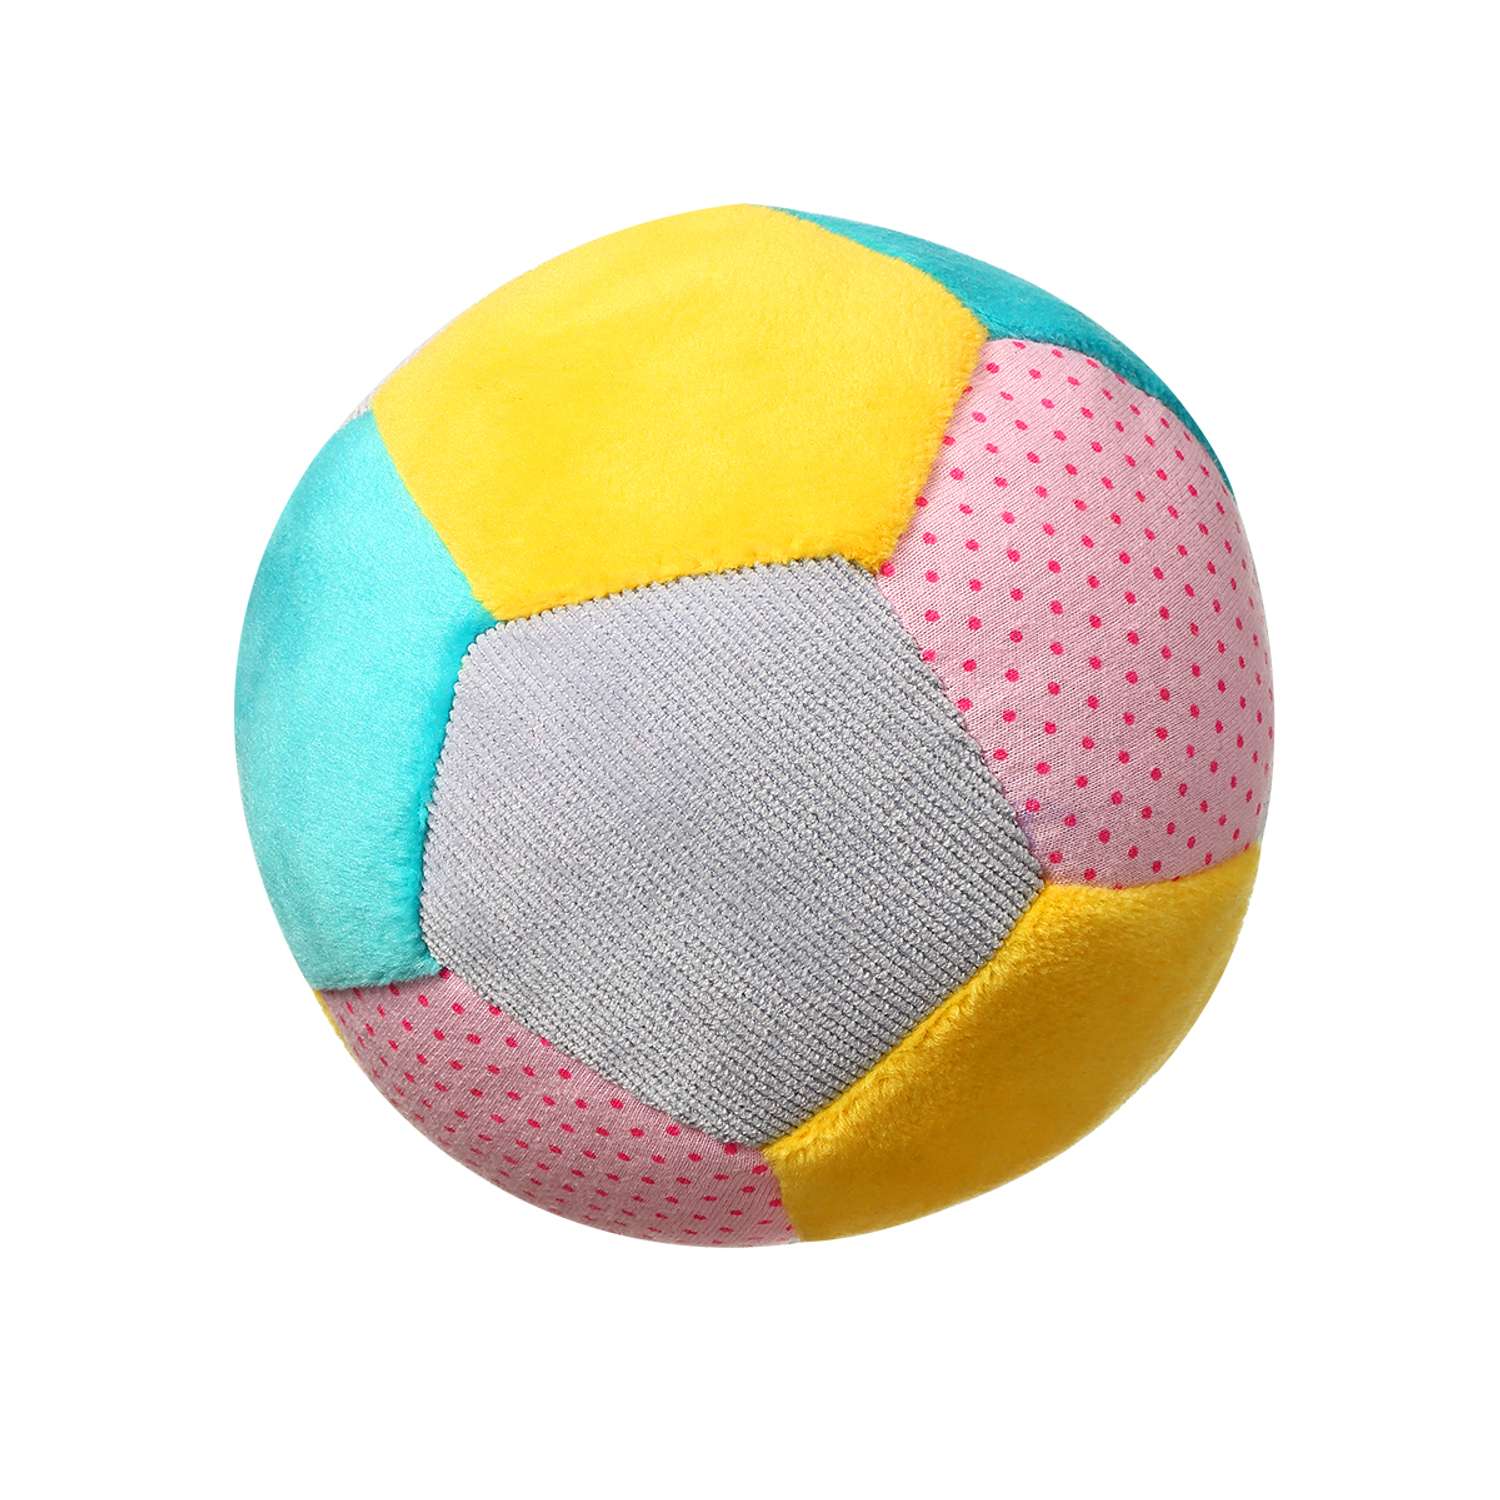 Игрушка Babyono Мячик текстильный 1276 - фото 1